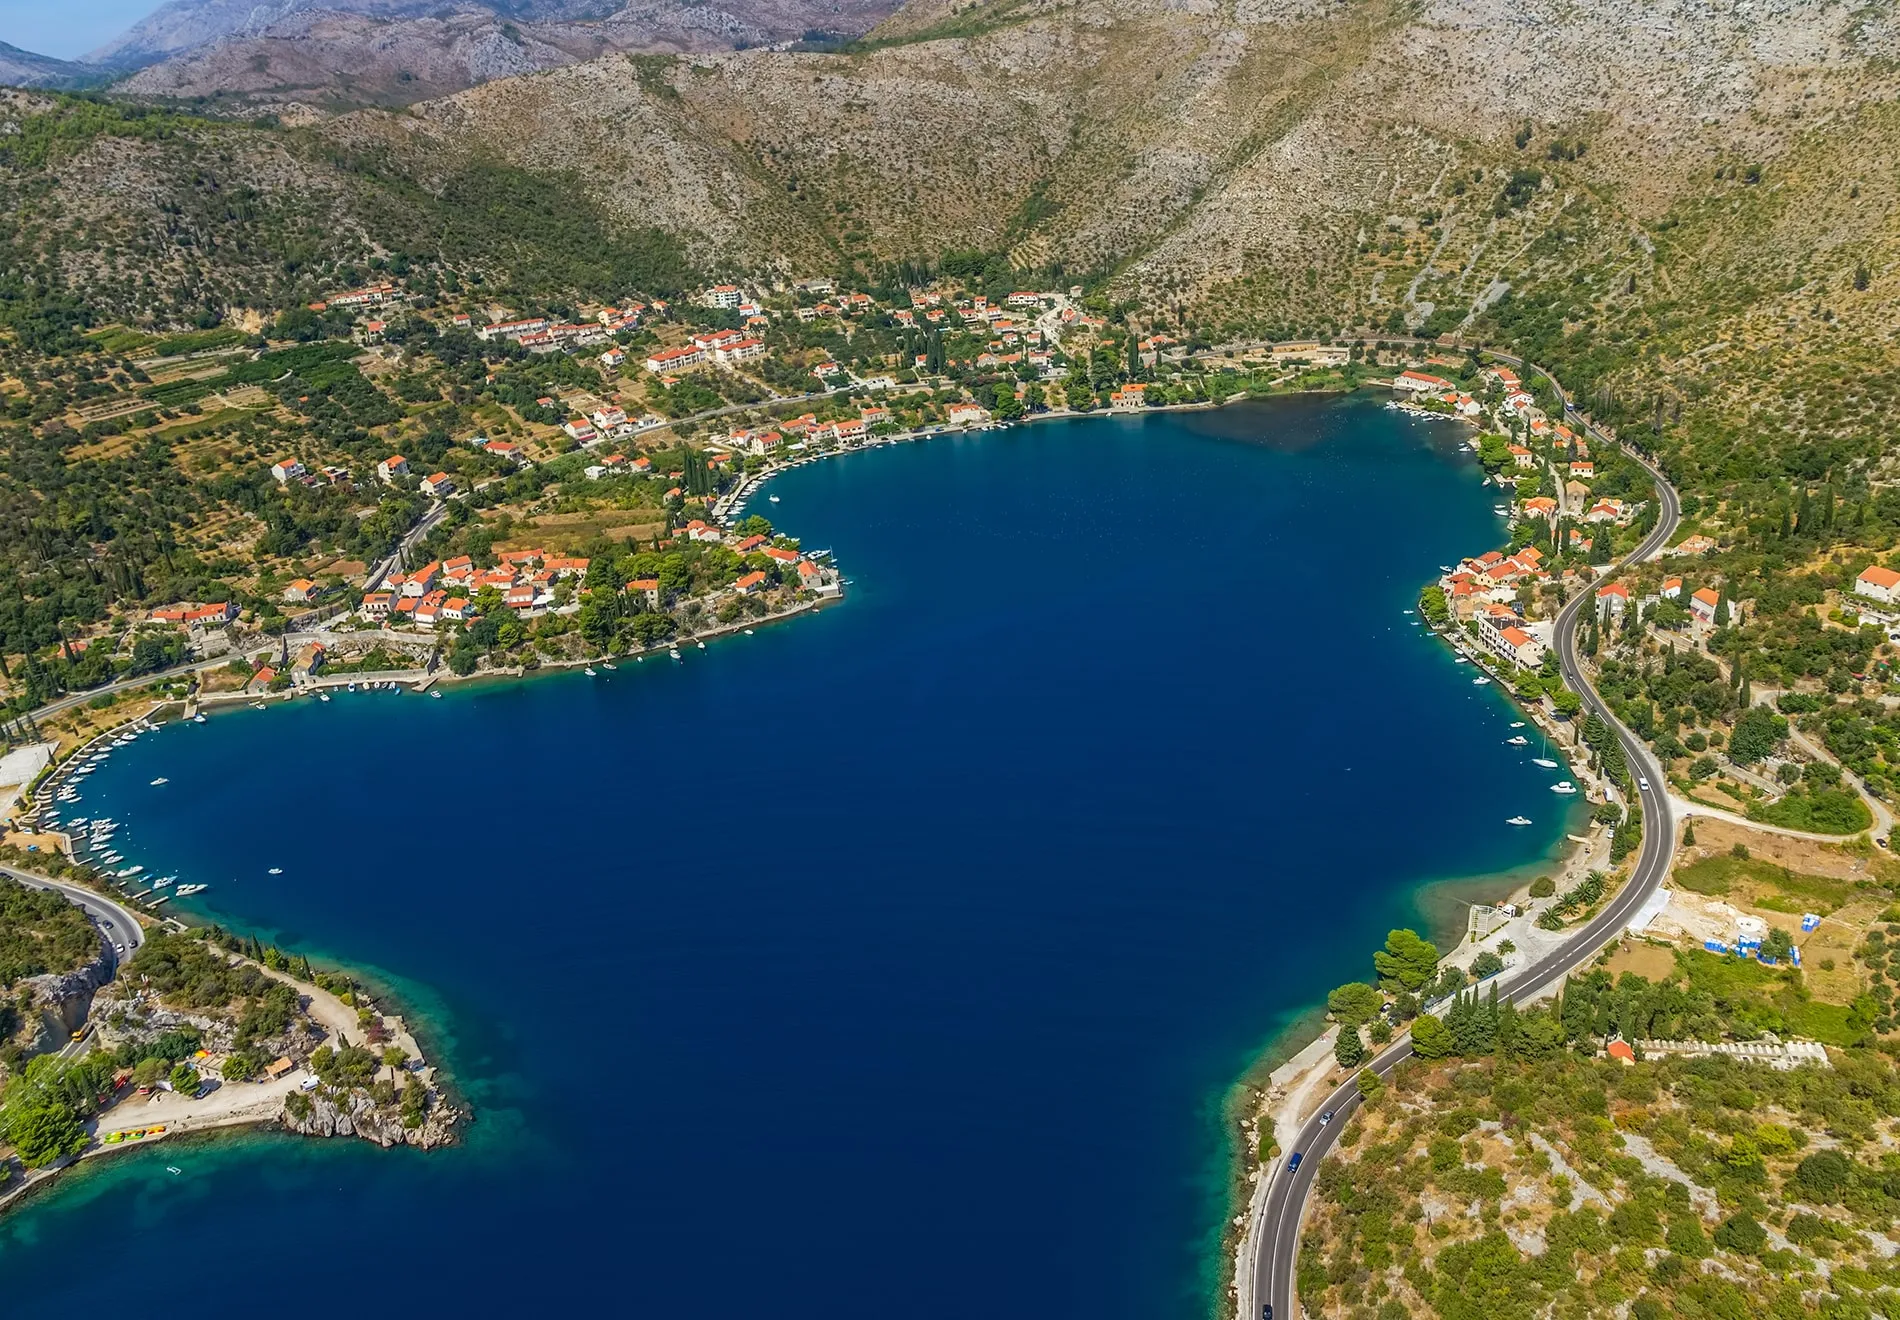 Dubrovnik - Zaton Bay